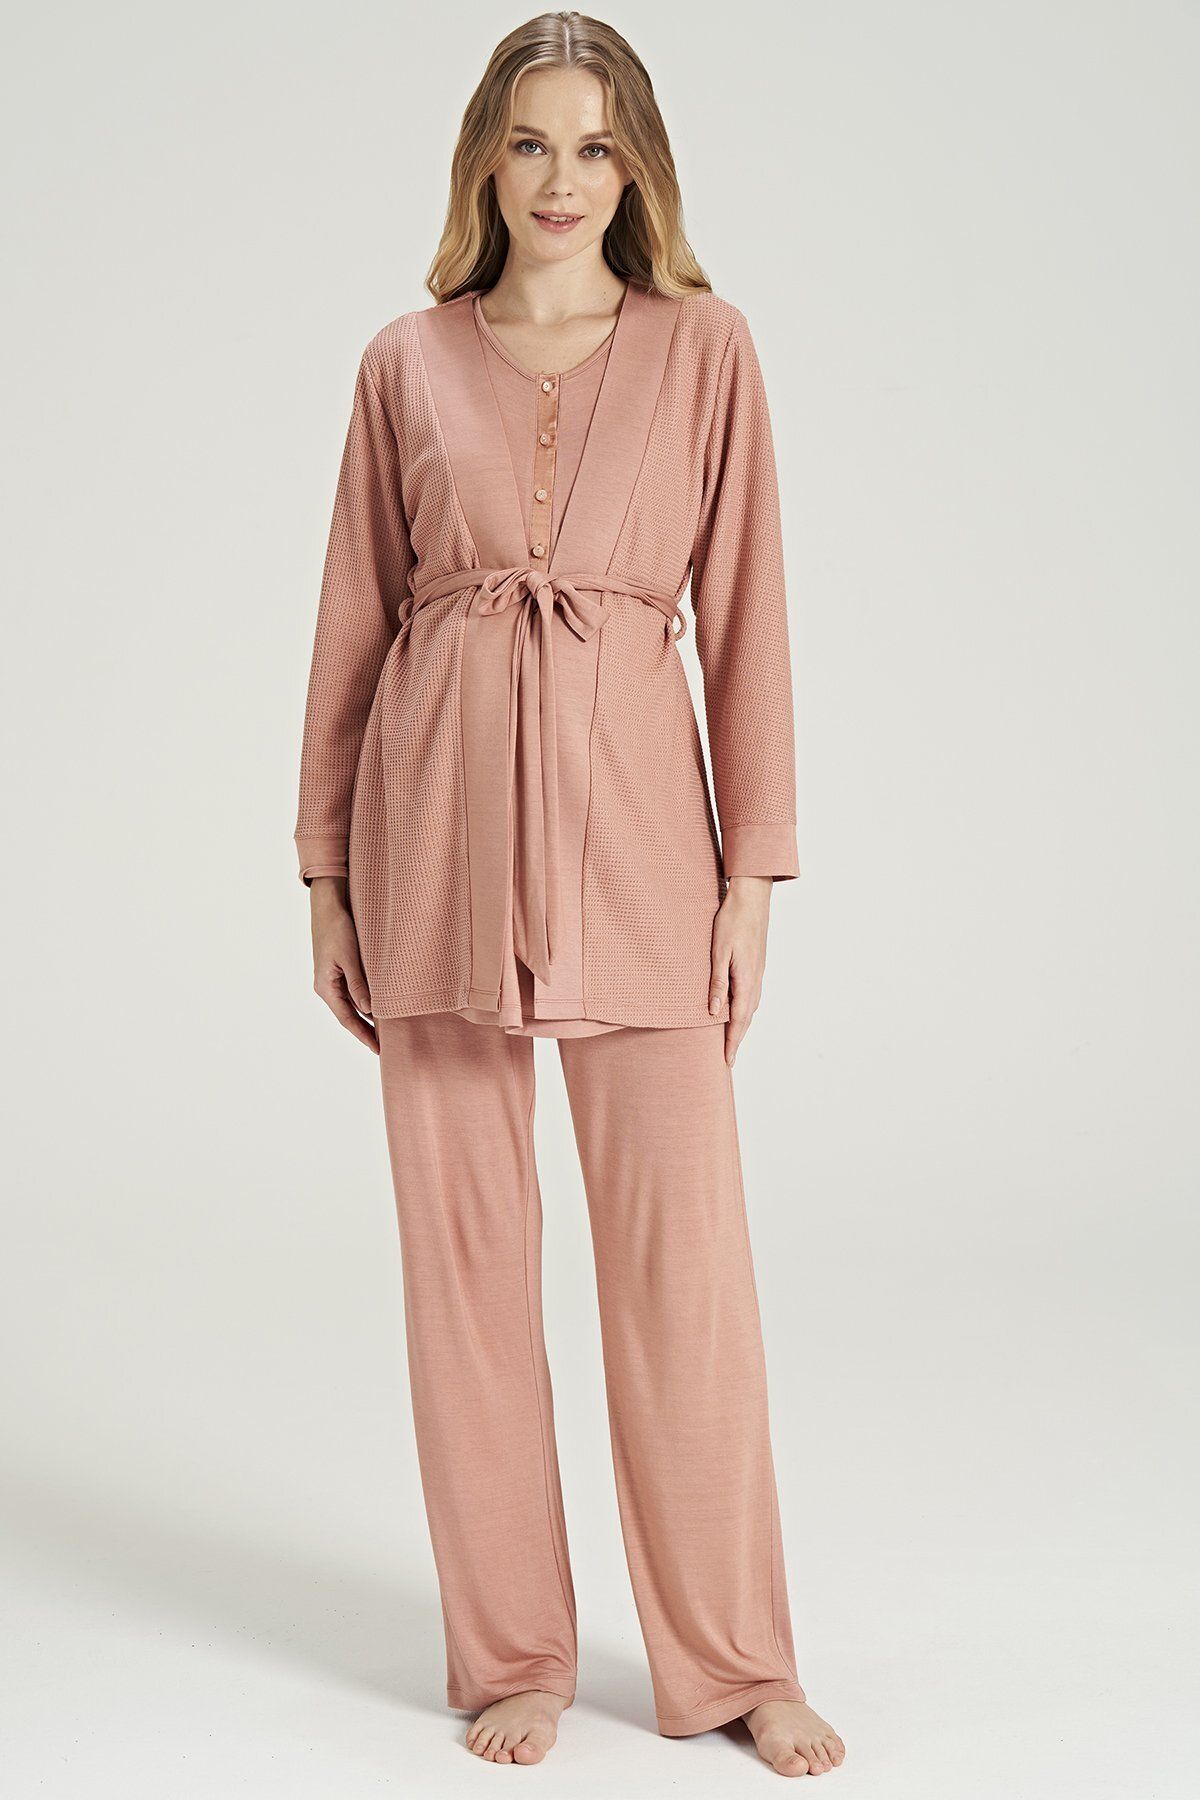 ILISANA Kadın Kiremit Renkli Petekli Yakası Düğmeli 3'lü Beden Kuşaklı Lohusa Pijama Takımı